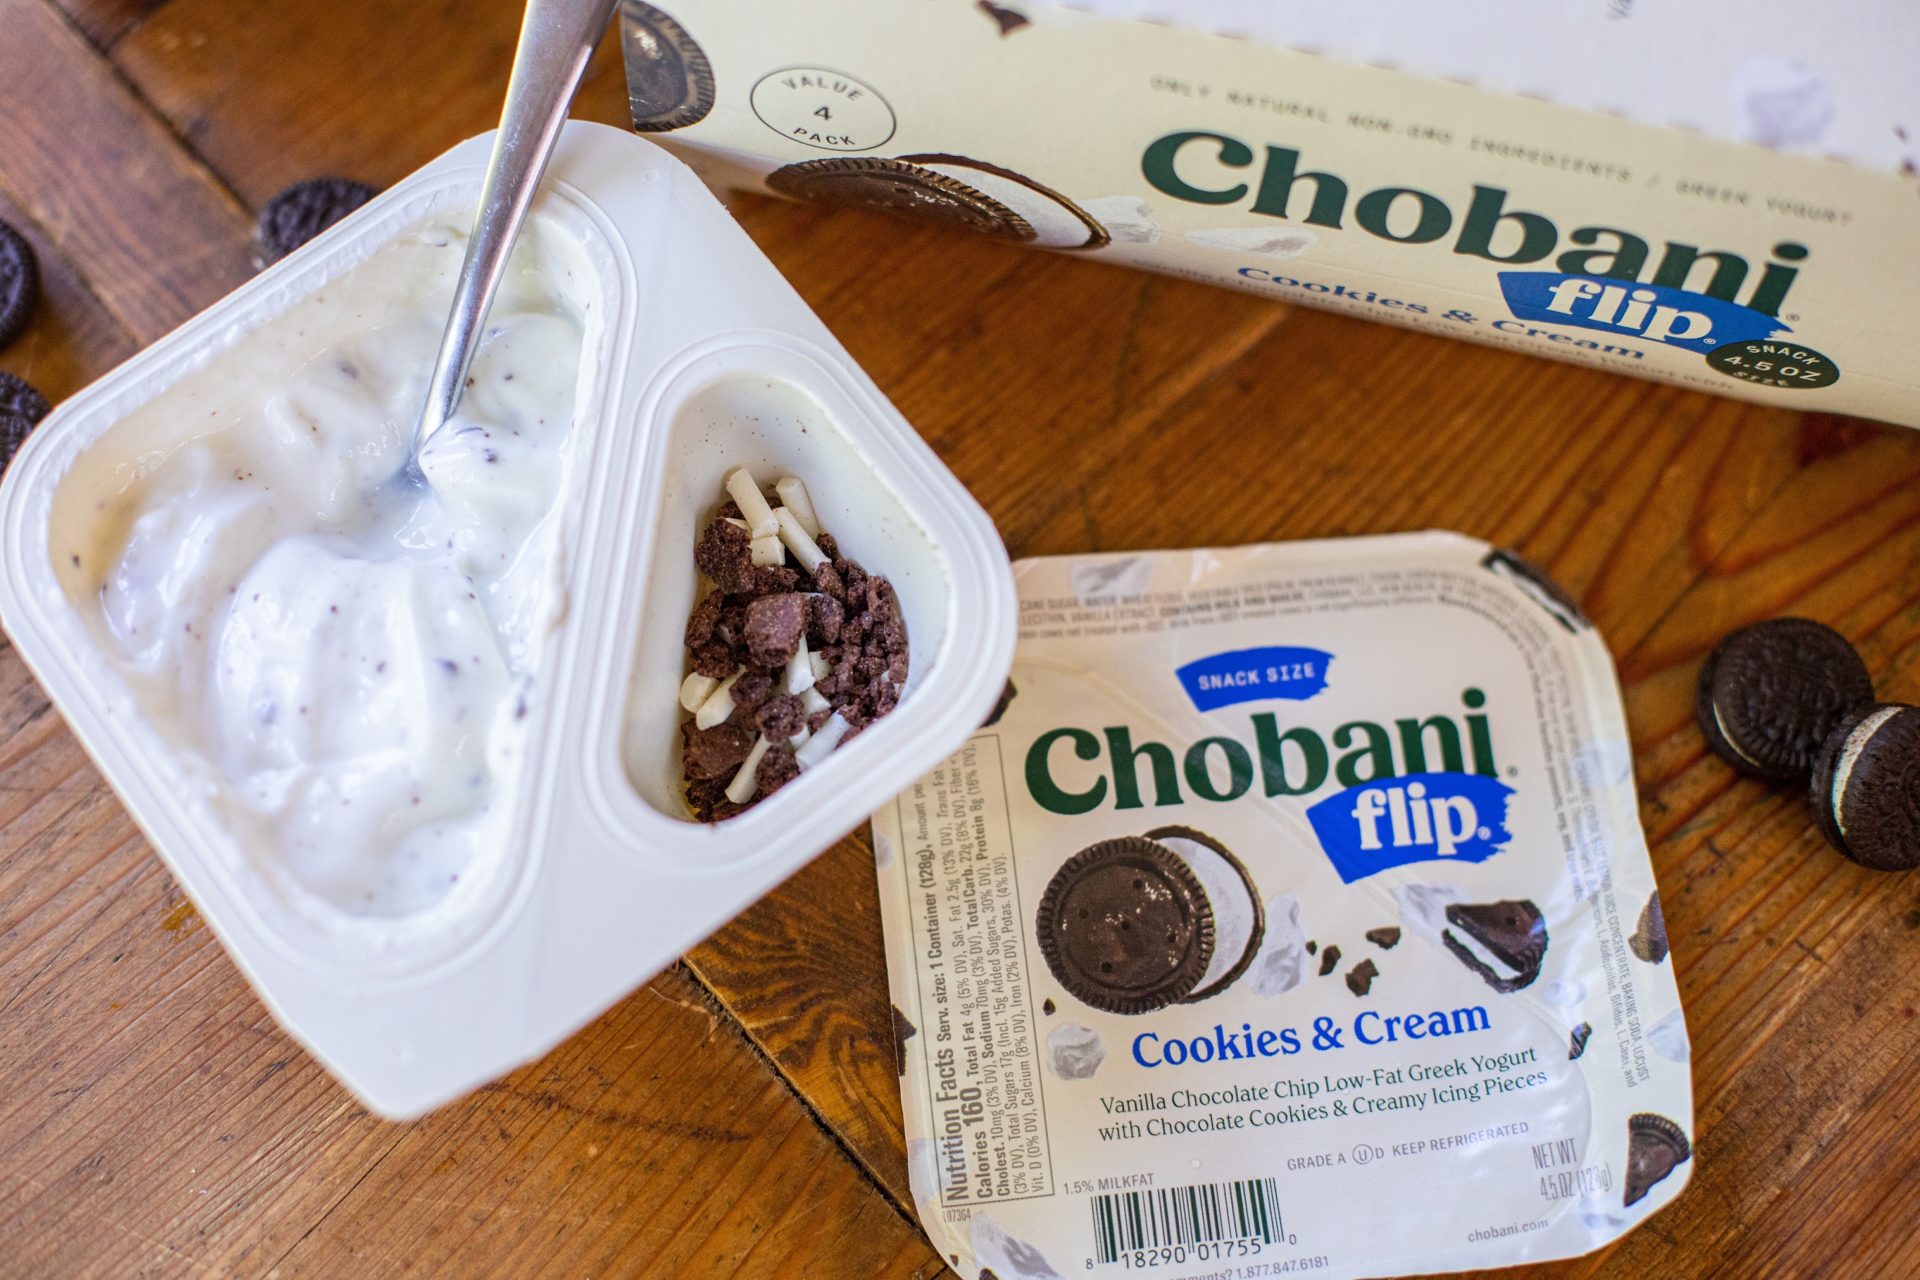 Chobani Flip Yogurt As Low As 88¢ At Kroger